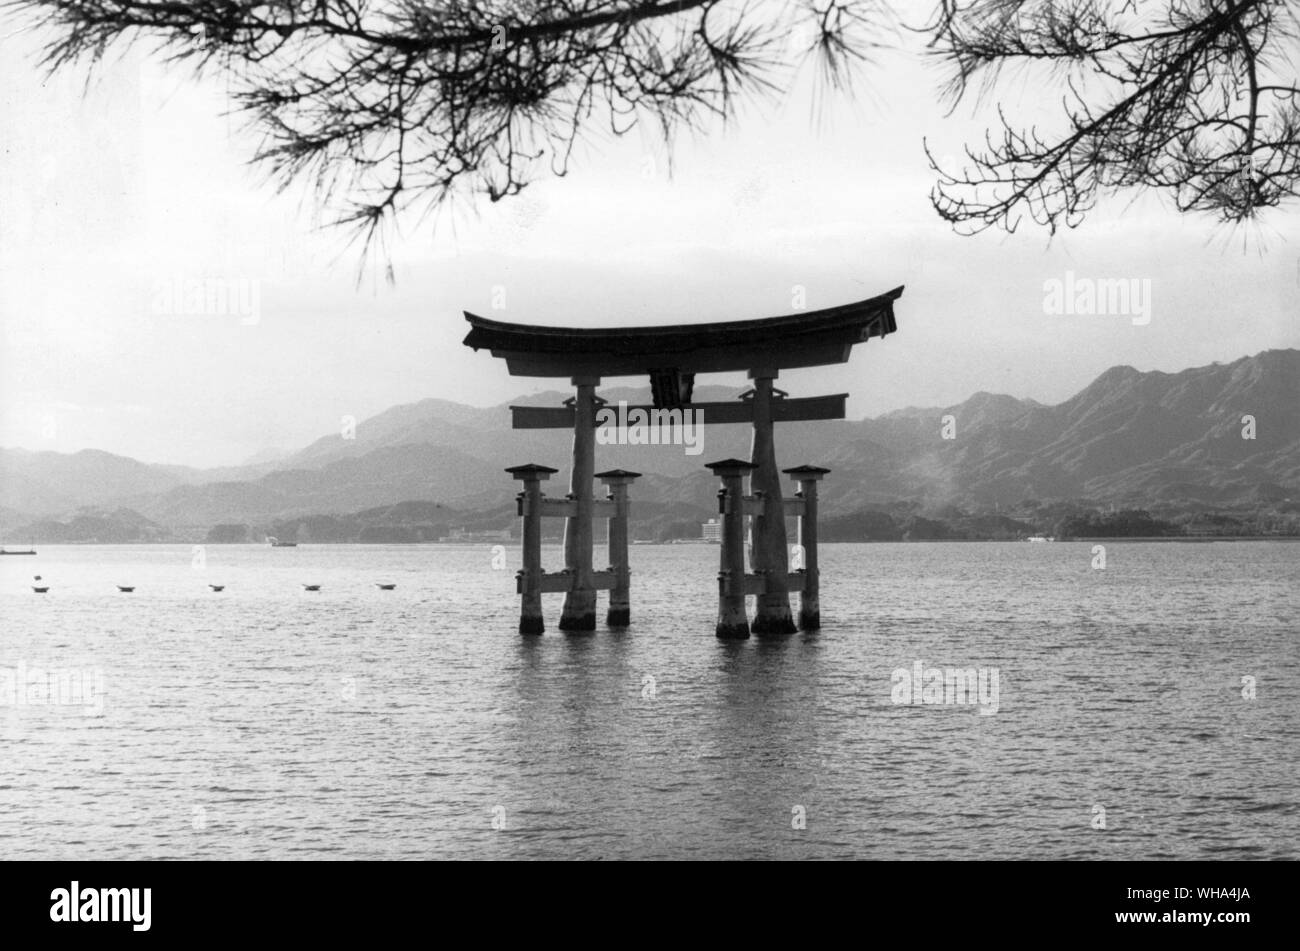 In Giappone , l'isola di Miyajima. L'enorme di legno di camfora Torii 14m alto è la simbolica Porta d ingresso al Santuario scintoista di Itsukushima decimo secolo dal mare. Eretto 1875 Foto Stock